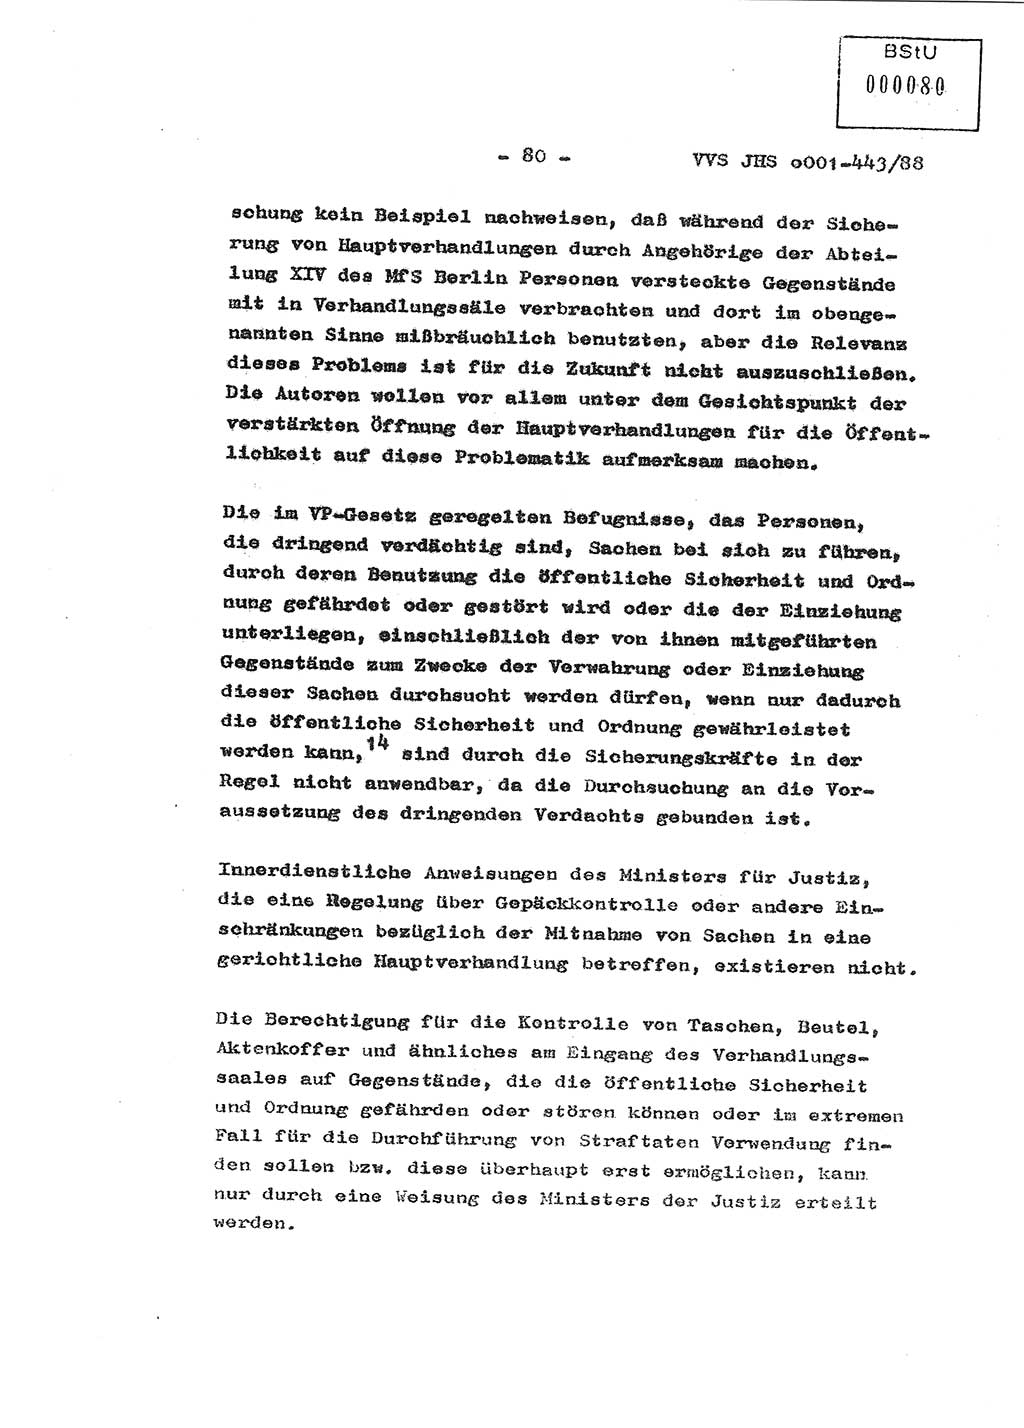 Diplomarbeit Hauptmann Michael Rast (Abt. ⅩⅣ), Major Bernd Rahaus (Abt. ⅩⅣ), Ministerium für Staatssicherheit (MfS) [Deutsche Demokratische Republik (DDR)], Juristische Hochschule (JHS), Vertrauliche Verschlußsache (VVS) o001-443/88, Potsdam 1988, Seite 81 (Dipl.-Arb. MfS DDR JHS VVS o001-443/88 1988, S. 81)